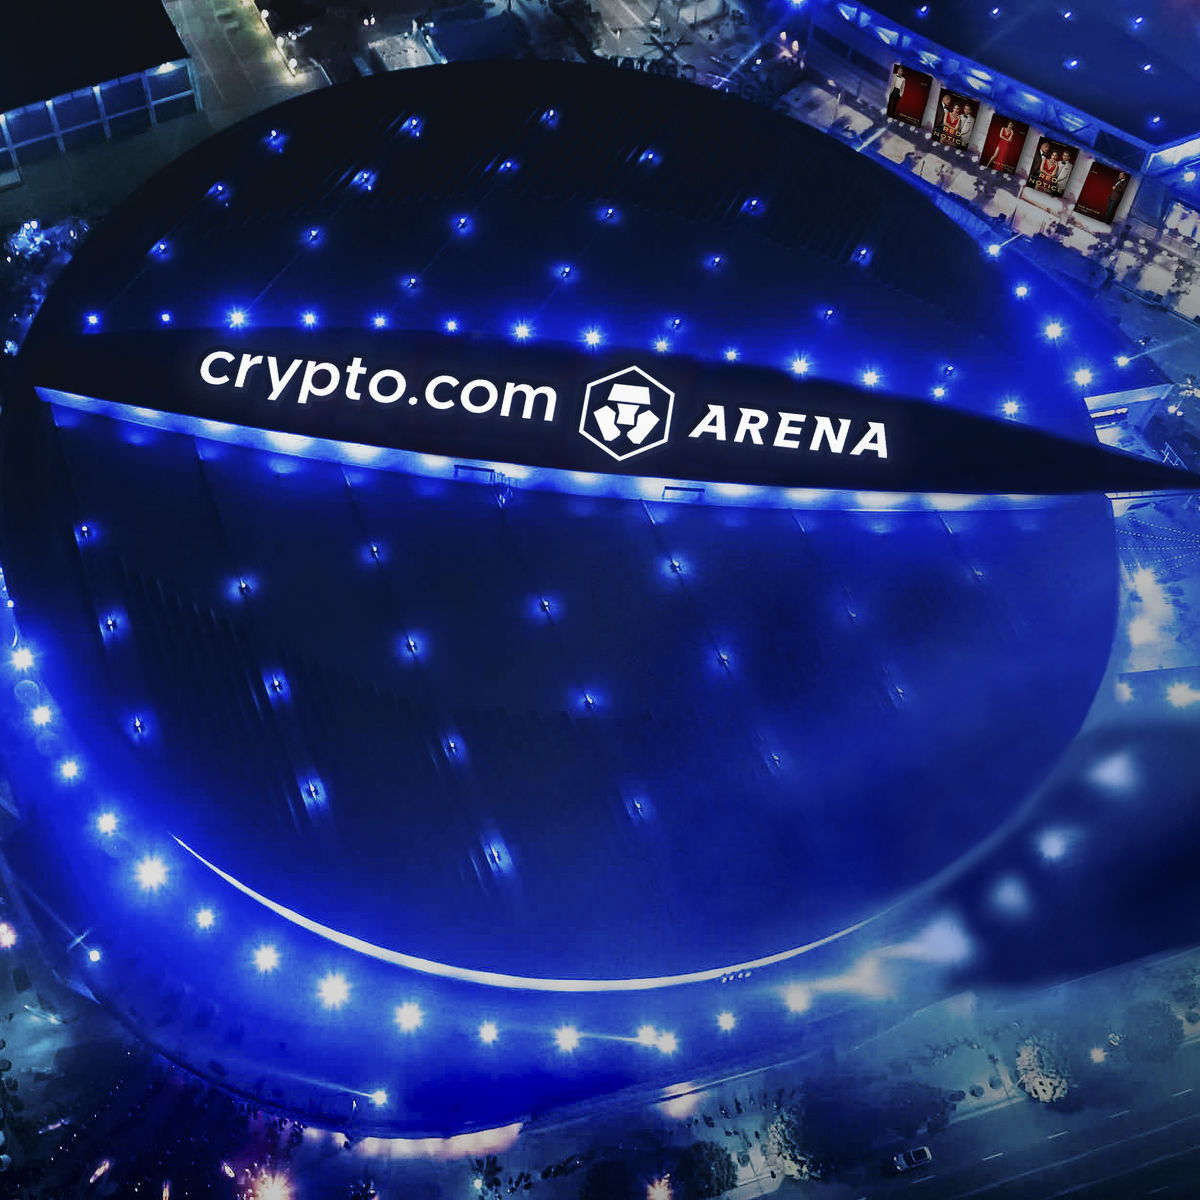 crypto.com arena render